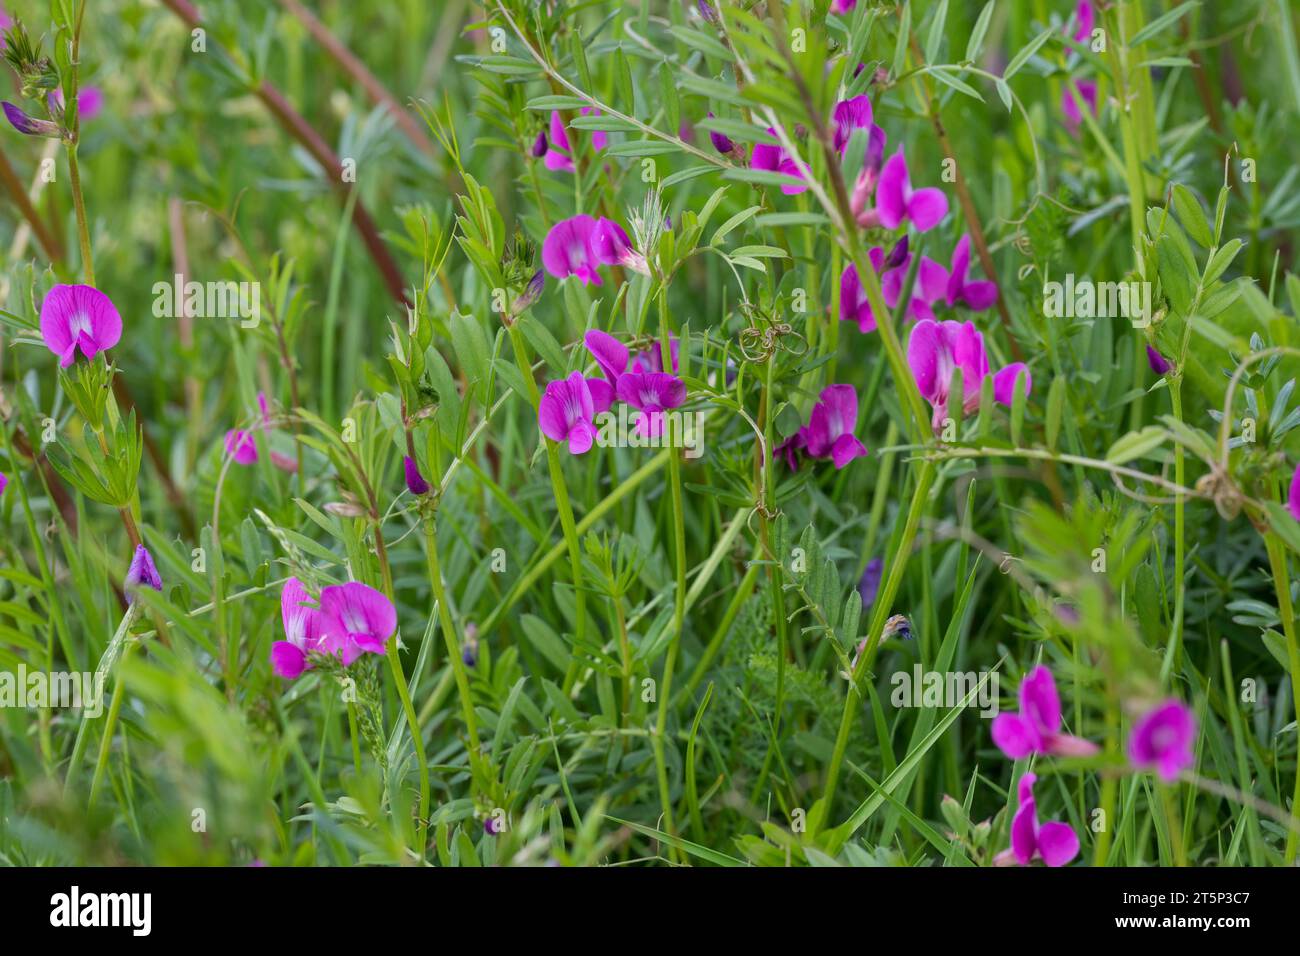 Saat-Wicke, Saatwicke, Futter-Wicke, Futterwicke, Vicia sativa, common vetch, garden vetch, tare, vetch Stock Photo